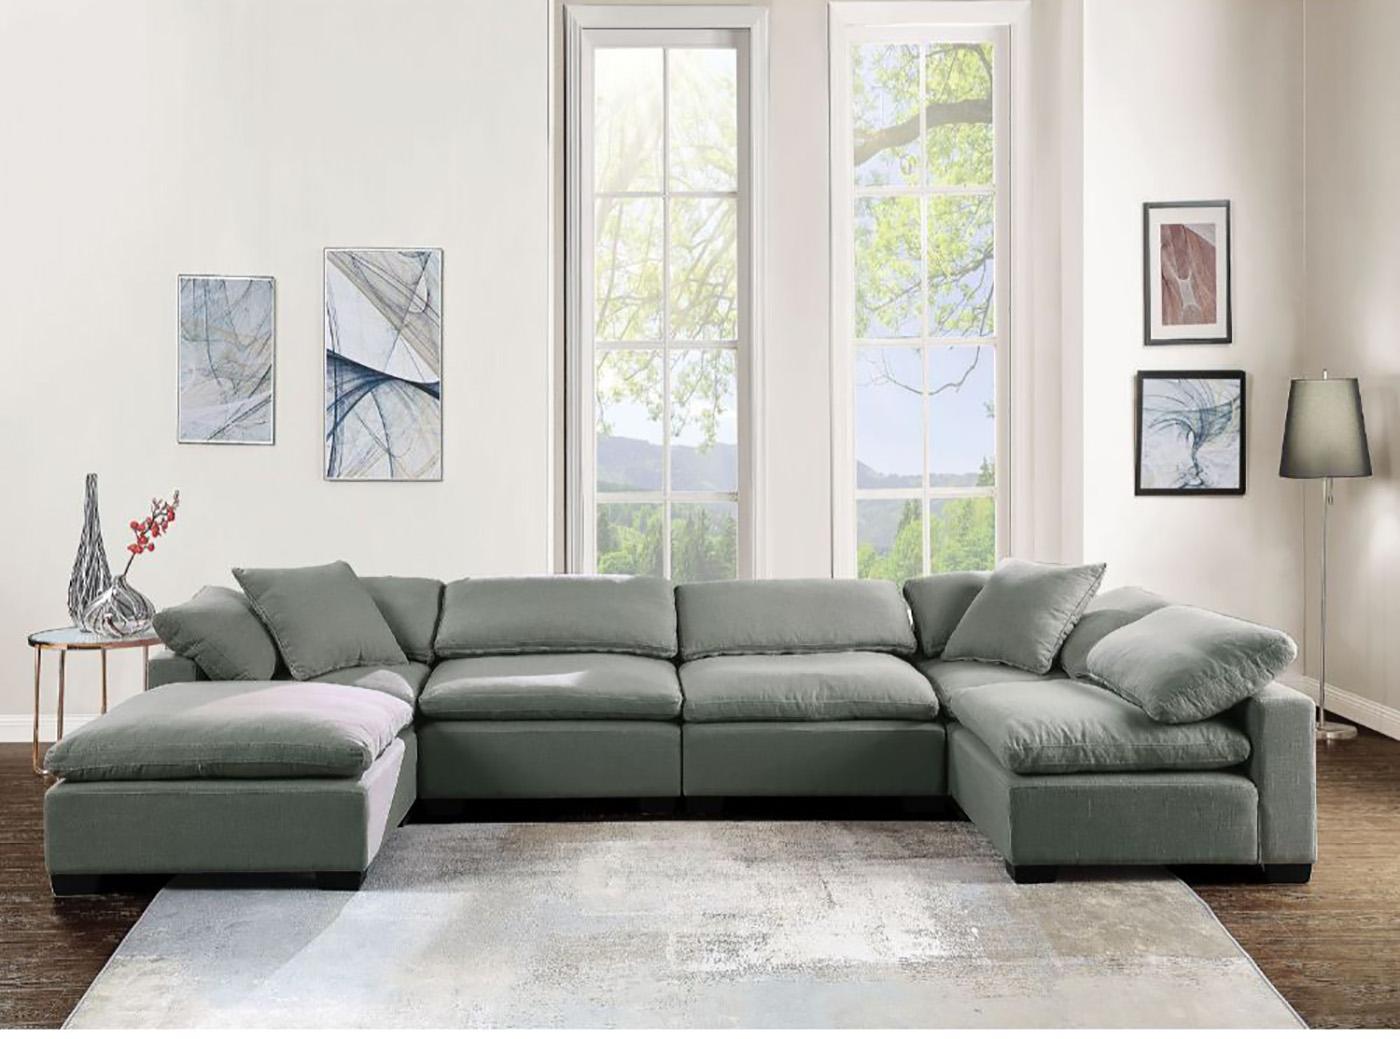 

    
Acme Furniture Kerry Modular Sectional Sofa Light Gray 53705-Sec Kerry
